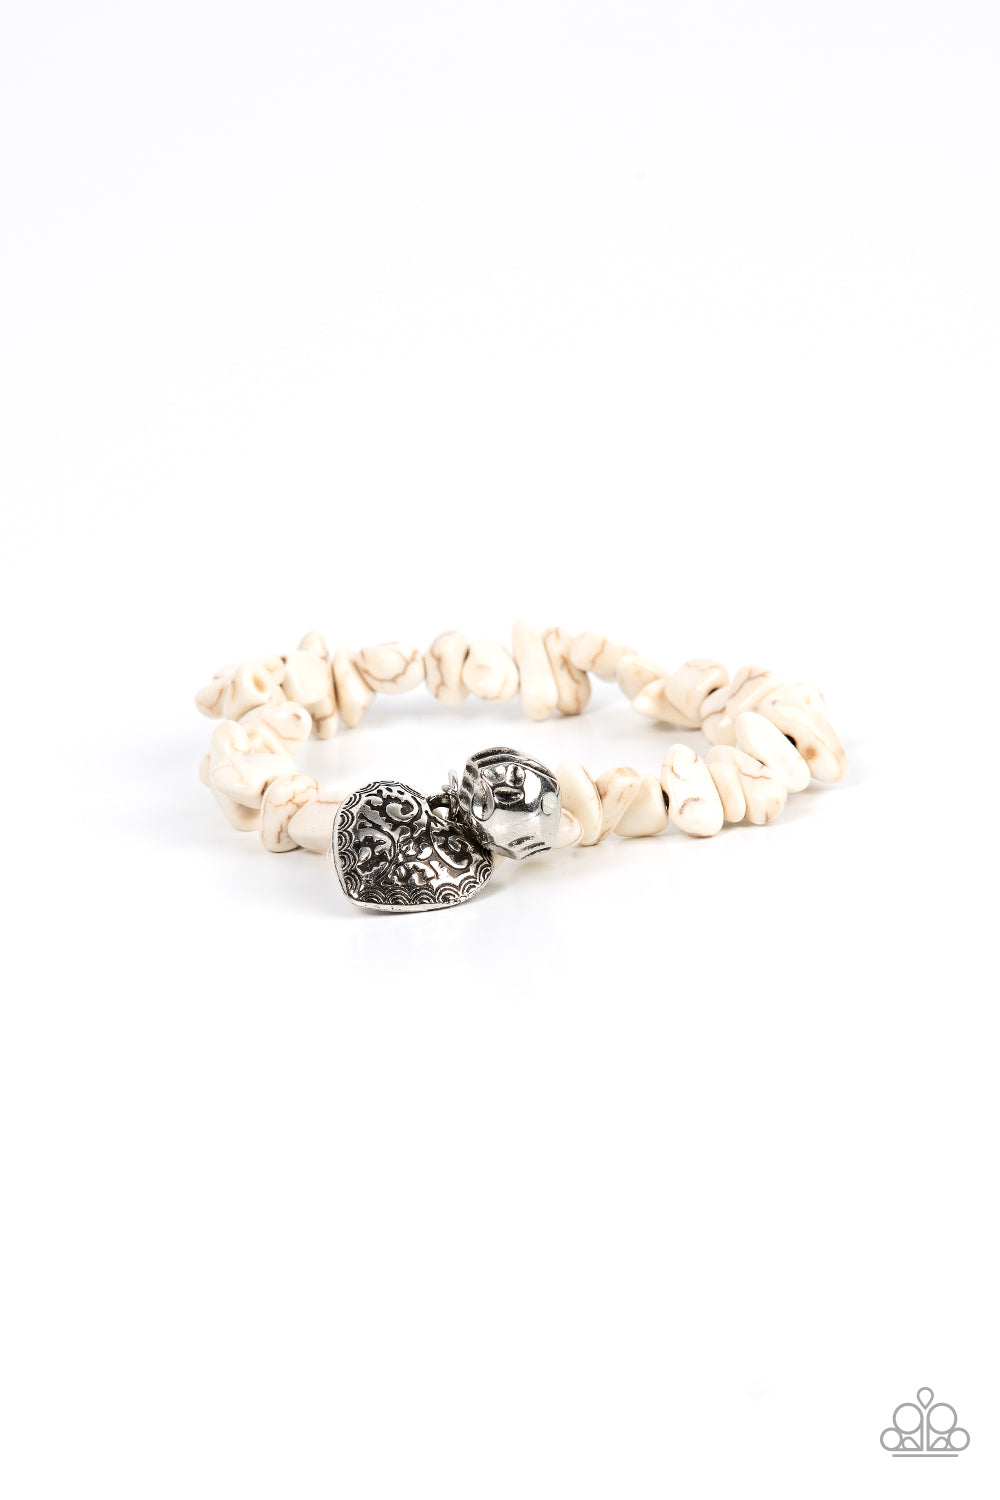 Love You to Pieces - White Bracelet freeshipping - JewLz4u Gemstone Gallery